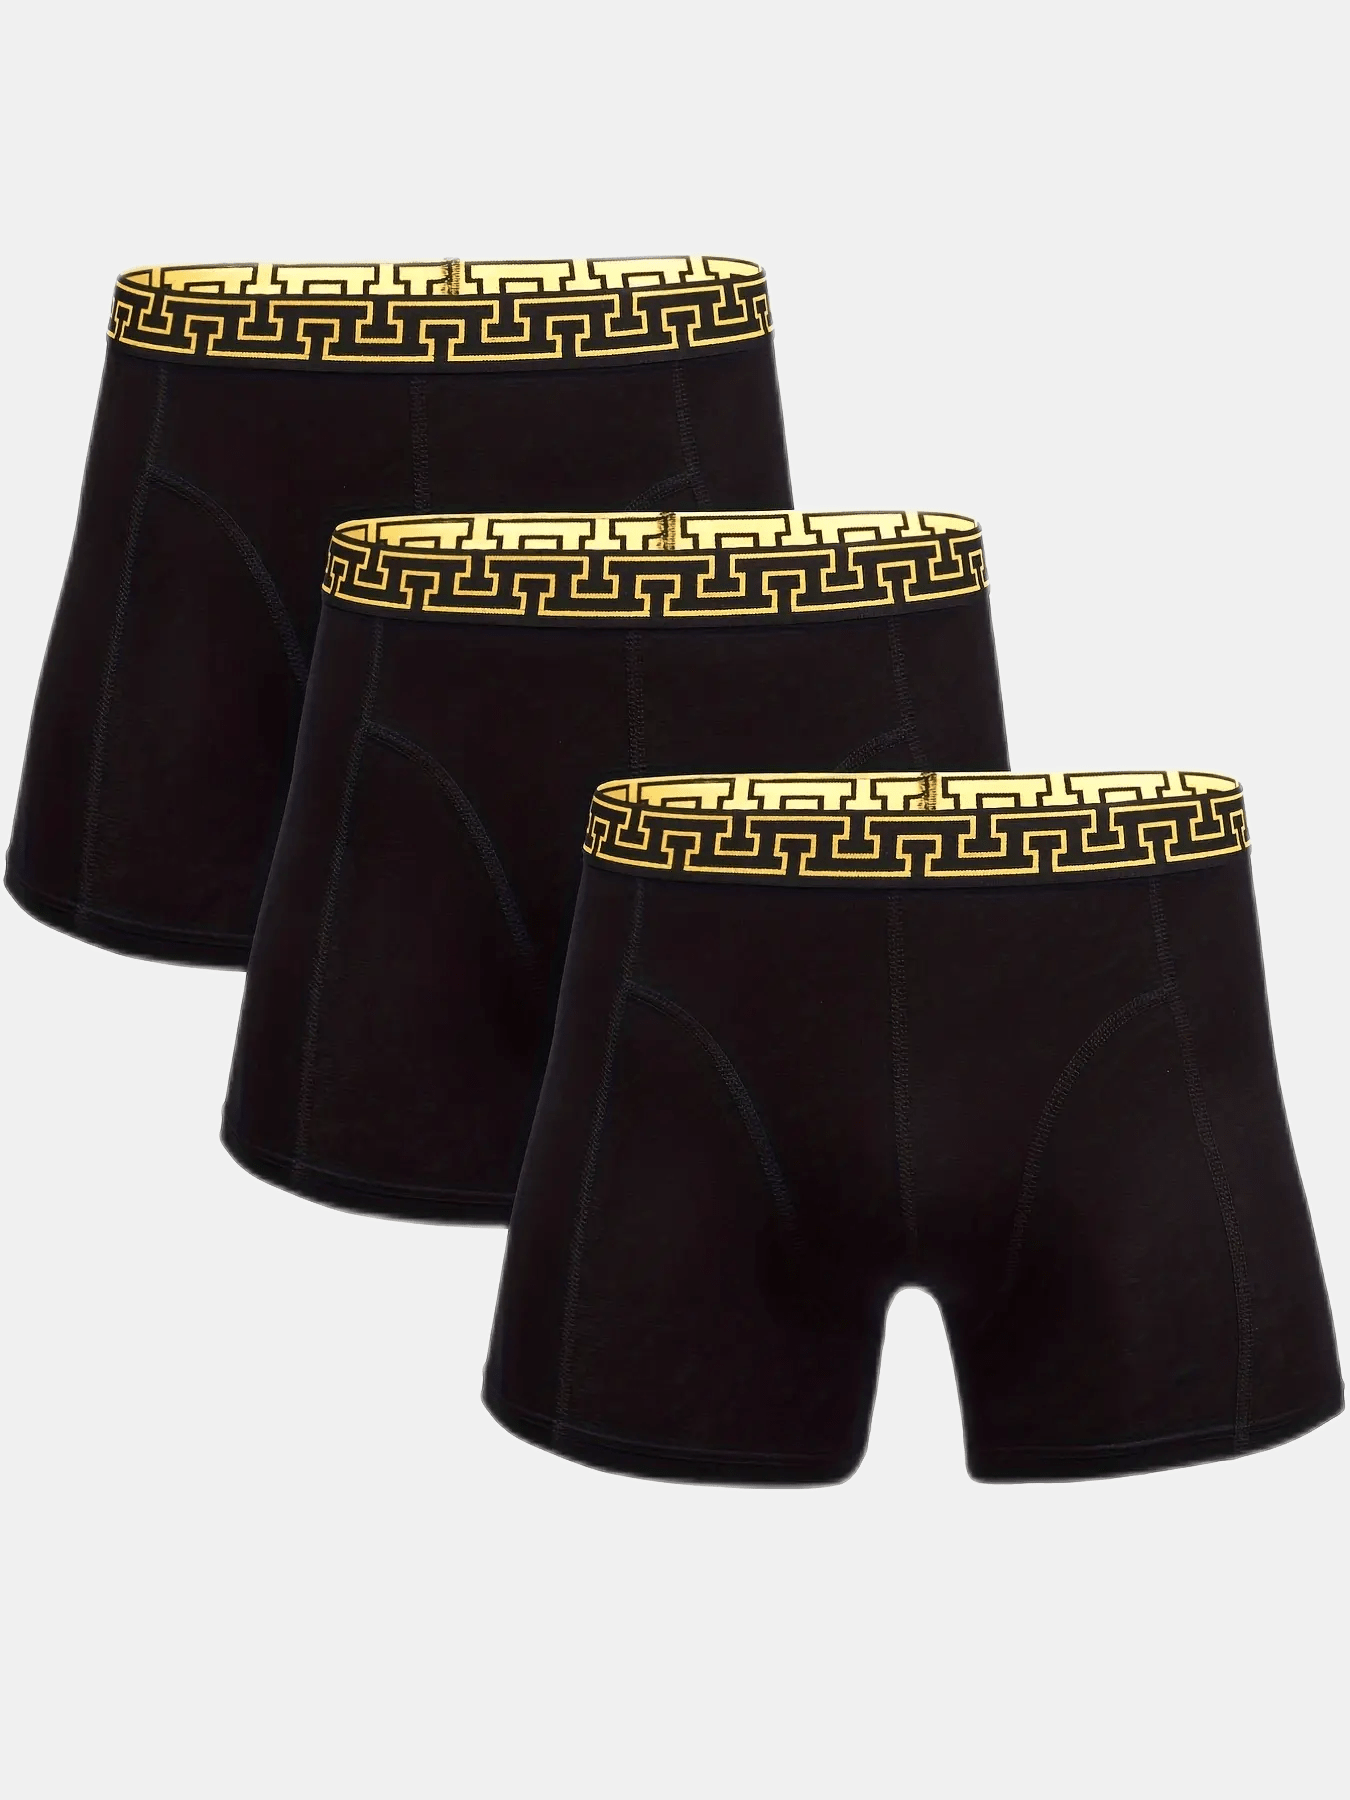 Versace Underwear Men's Black Boxers